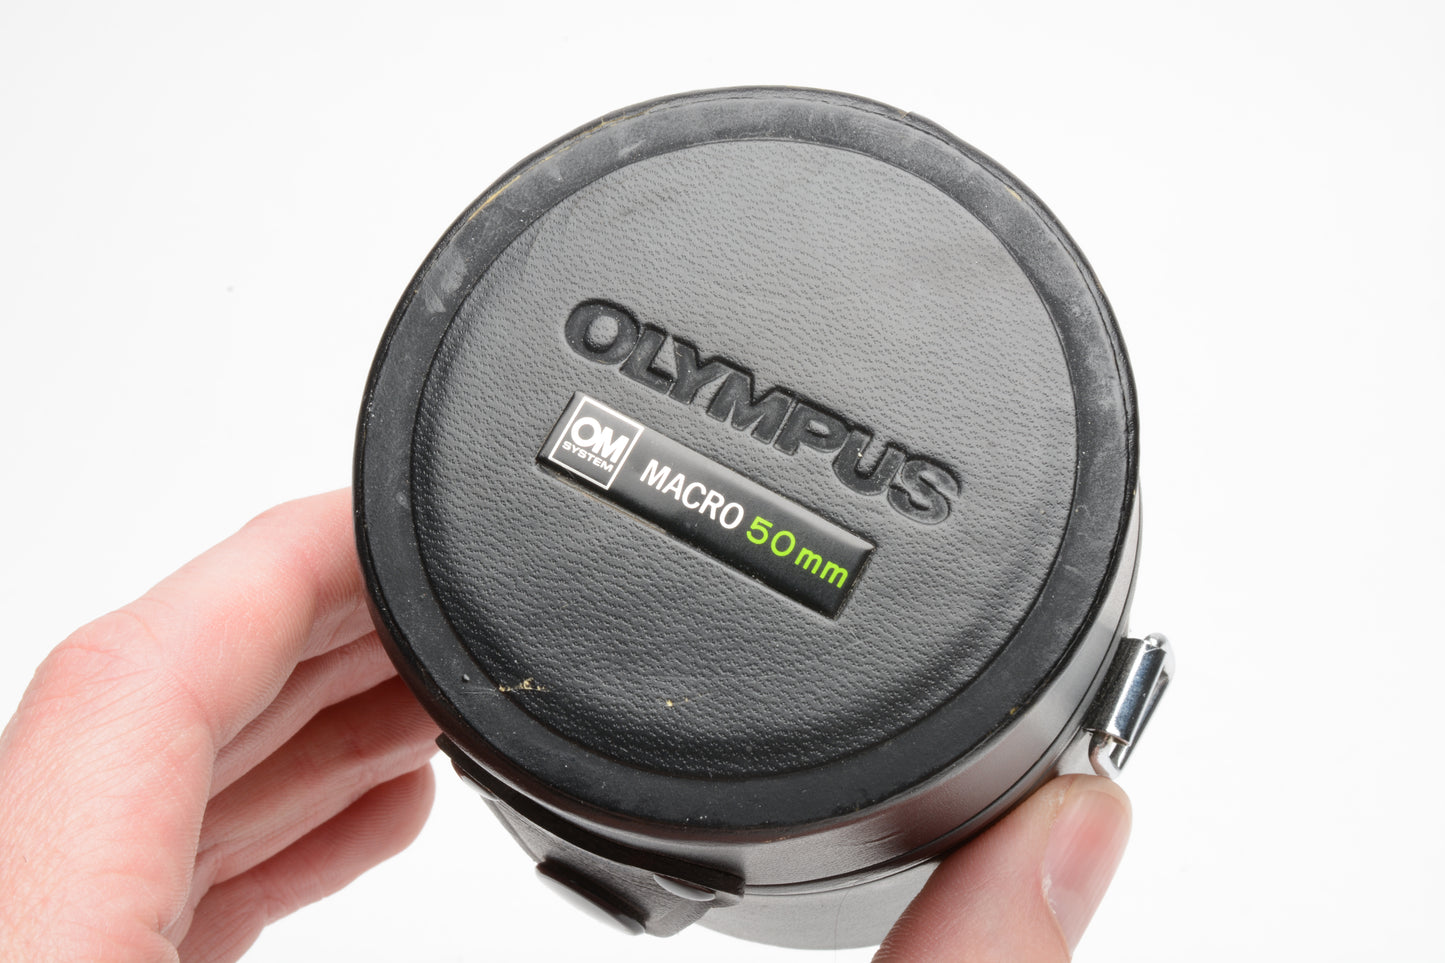 Olympus OM 50mm Macro lens case